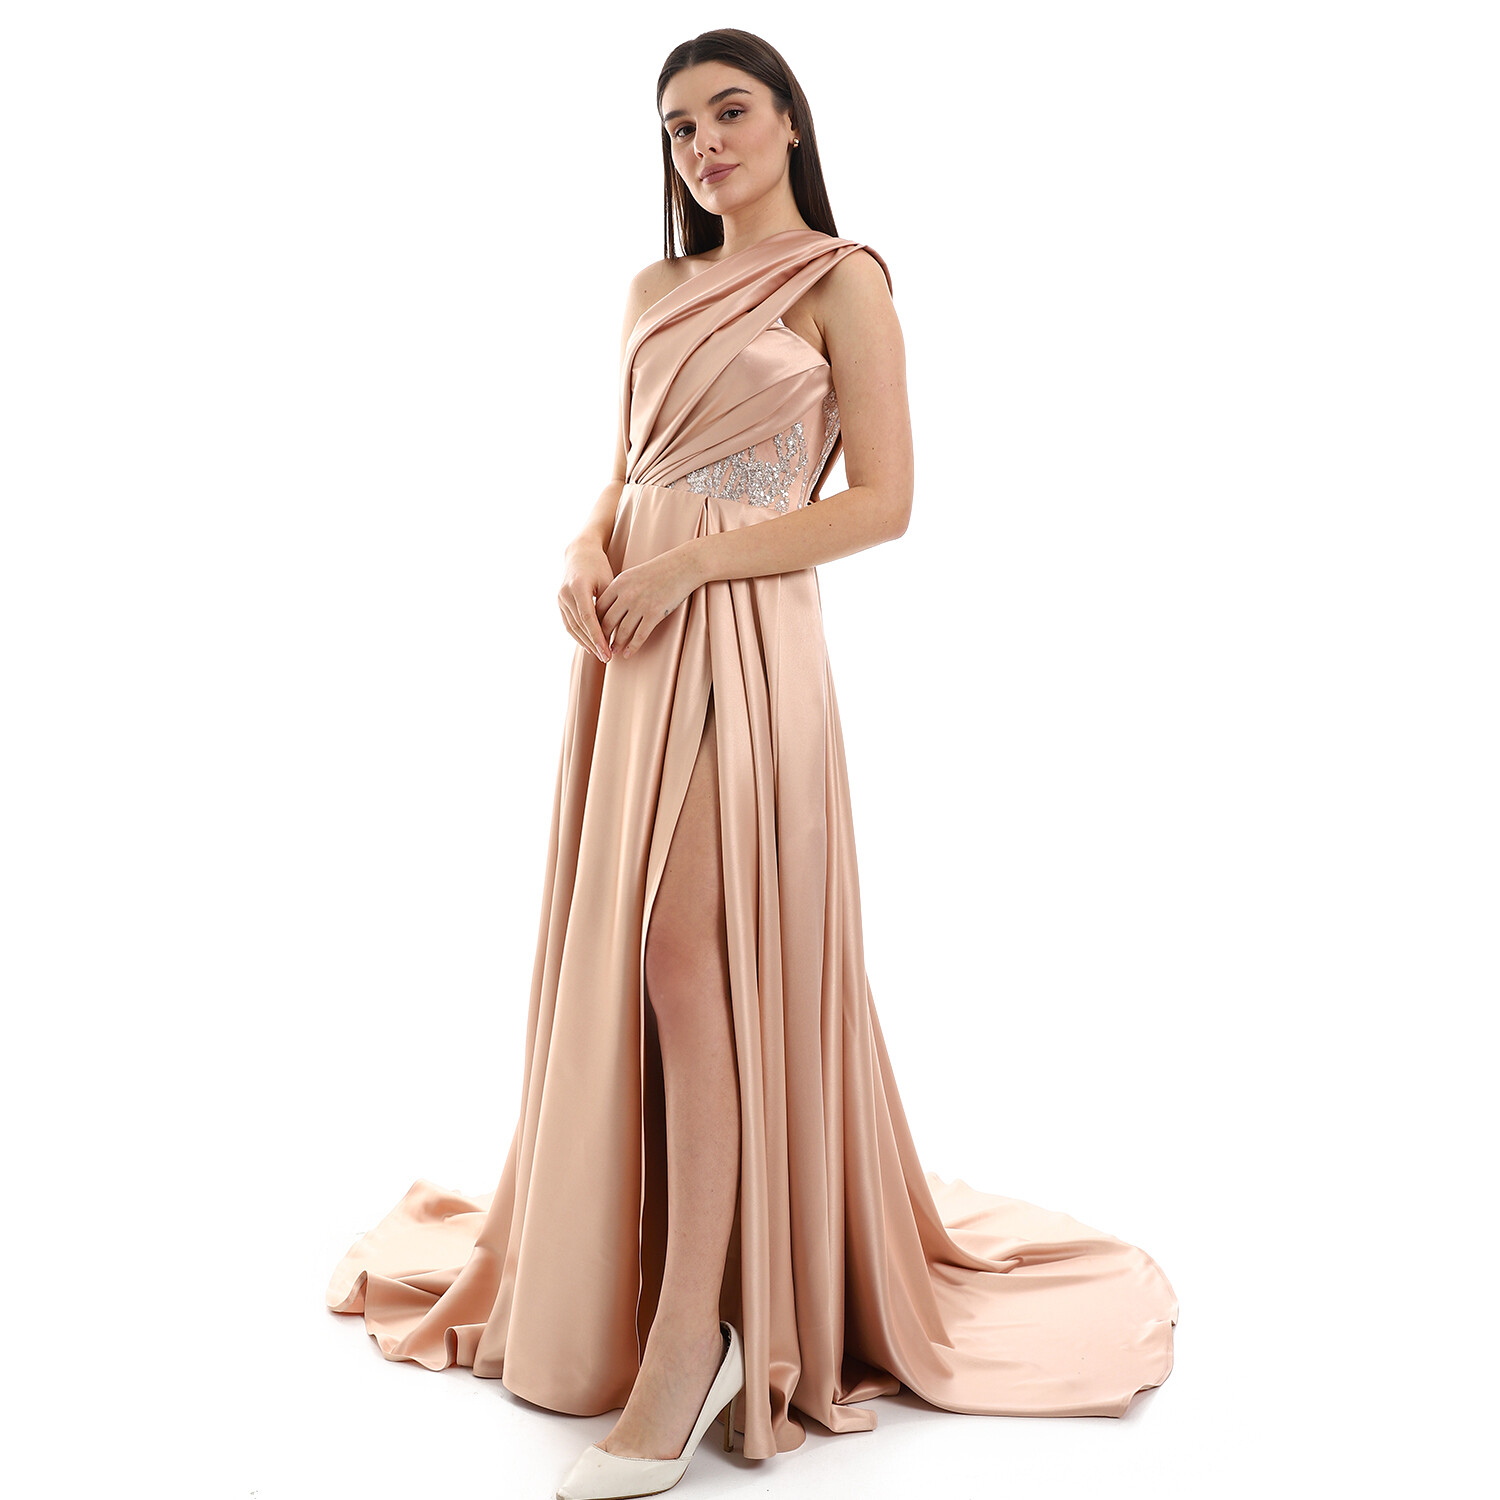 Glitter Details Over Nude Pink One-Shoulder Soiree Dress 8713